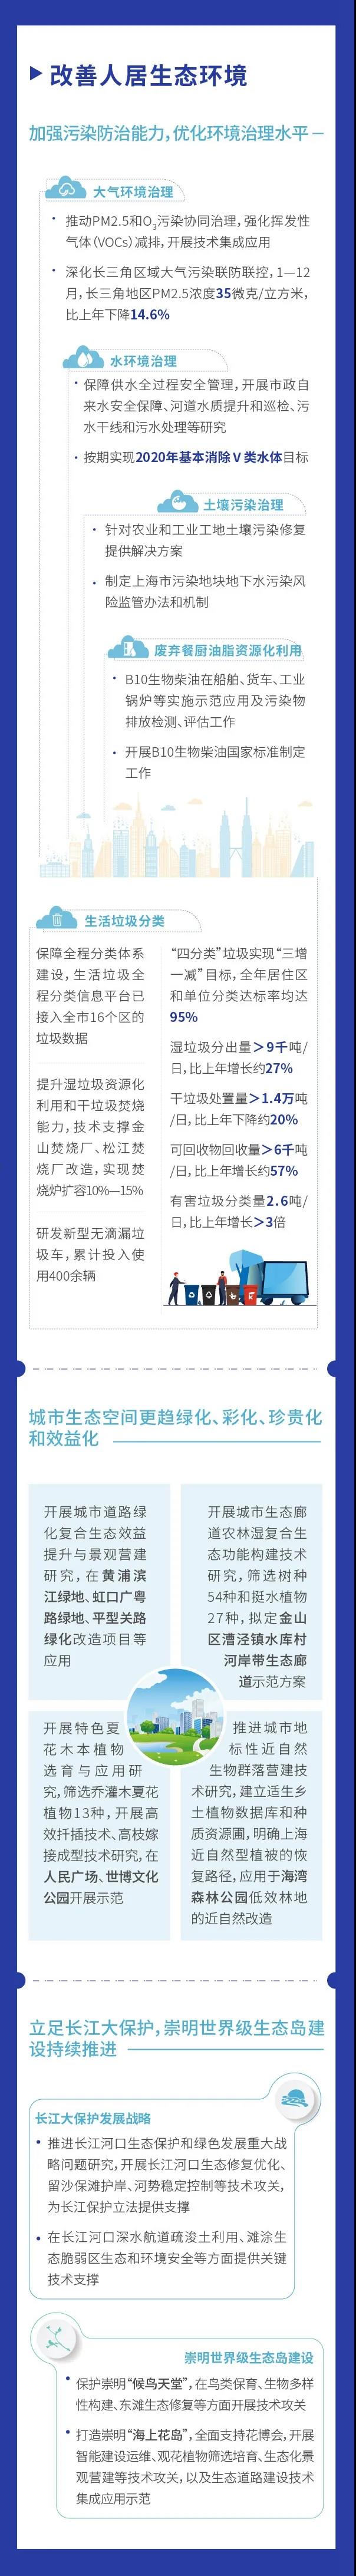 图看《2020上海科技进步报告》③3.jpg